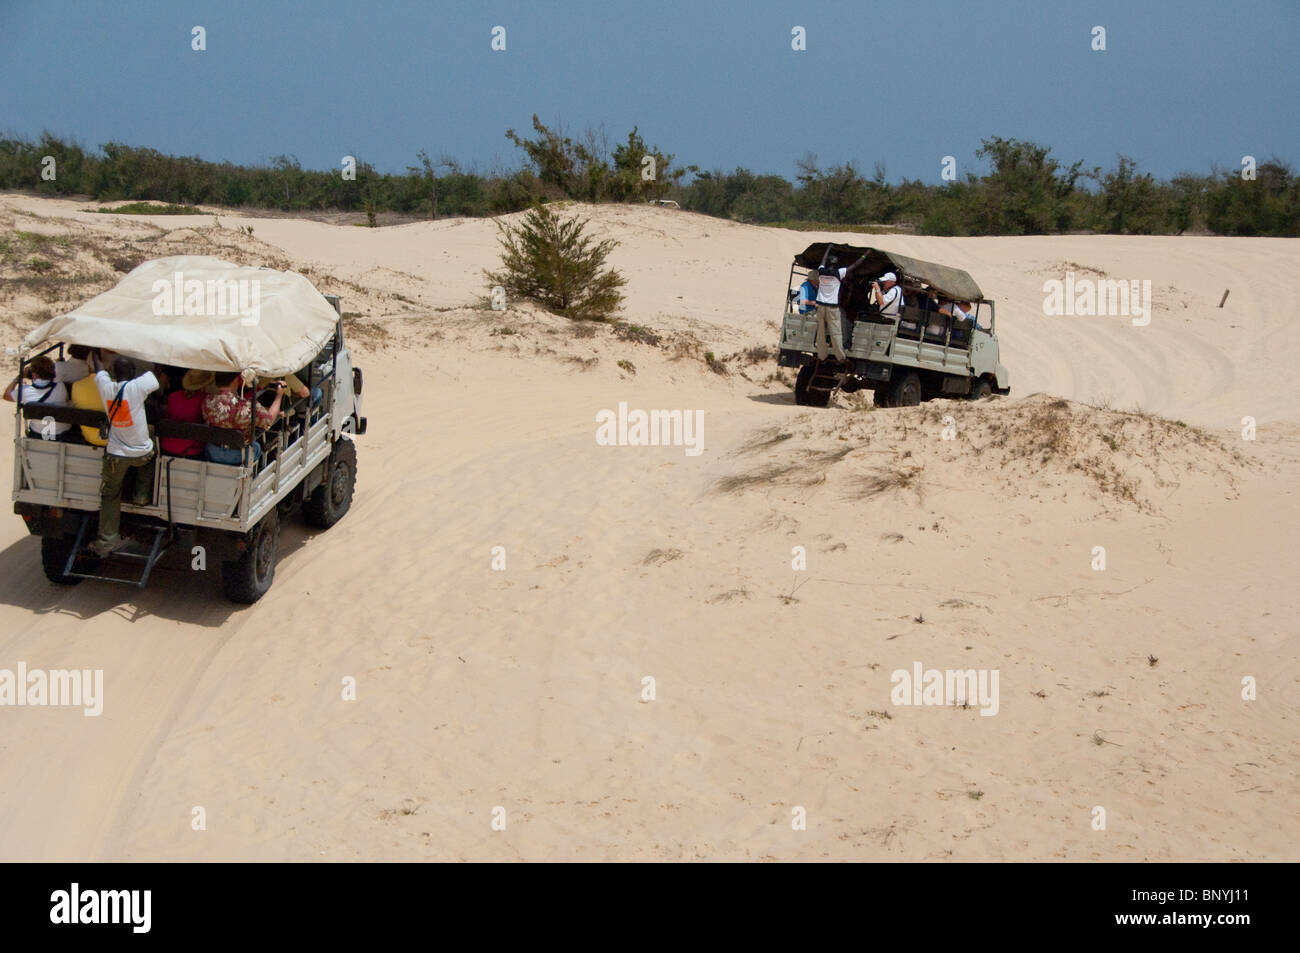 Afrique, Sénégal, Dakar. Explorer les dunes de sable autour du Lac Rose de Retba en 4x4, jeeps. Banque D'Images